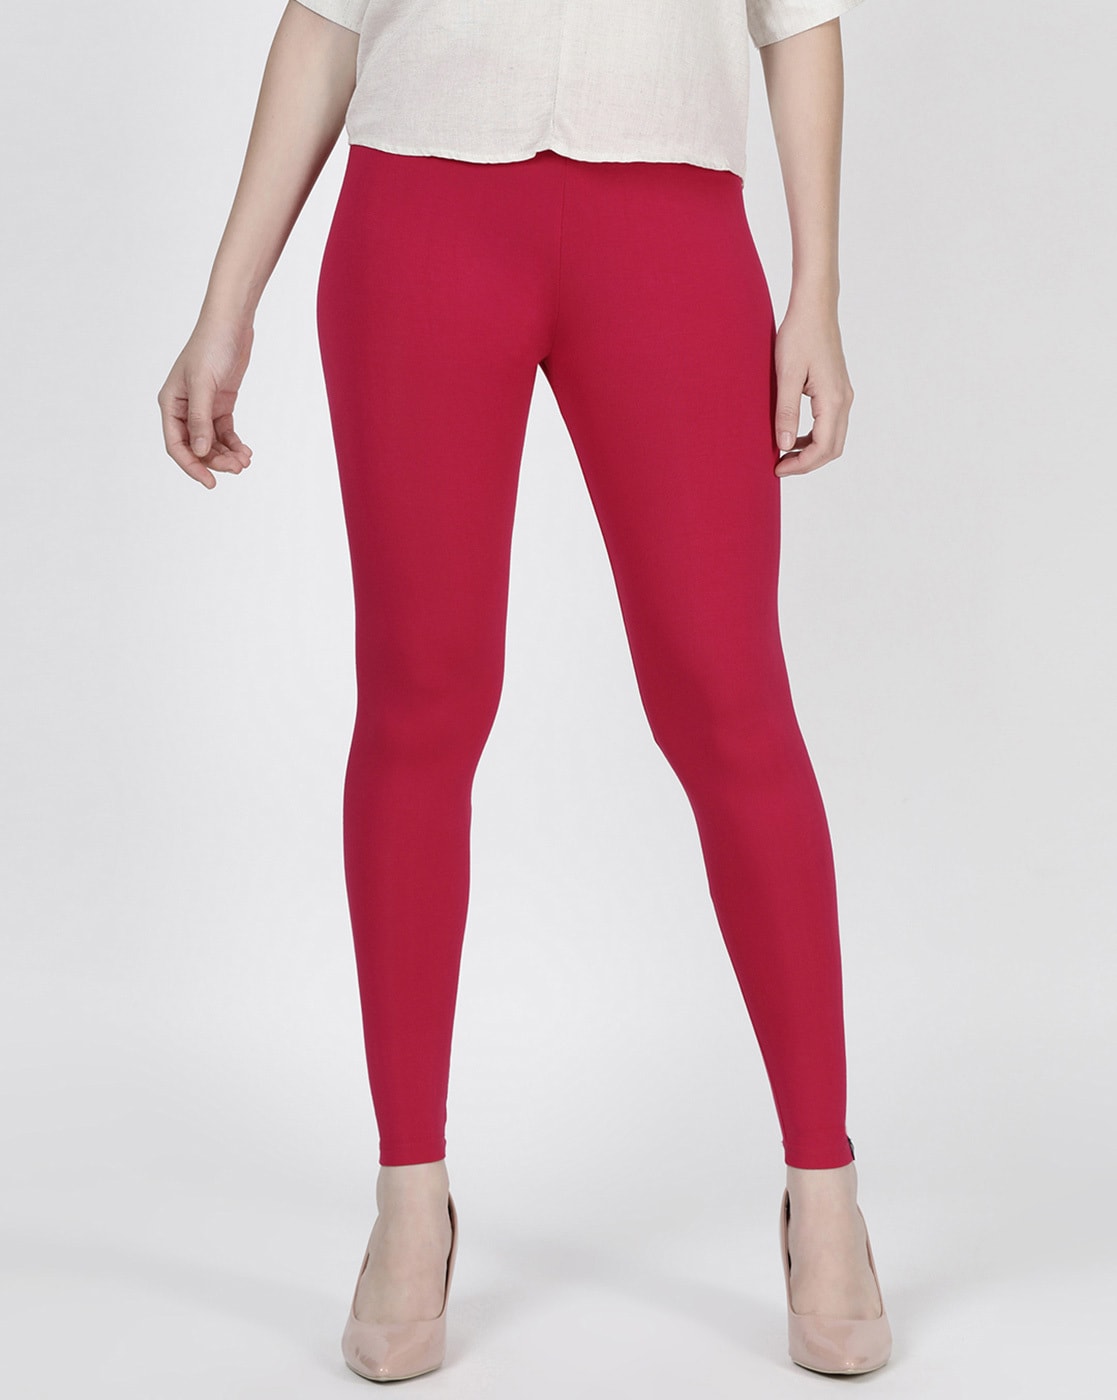 Reveal 118+ dark pink leggings super hot